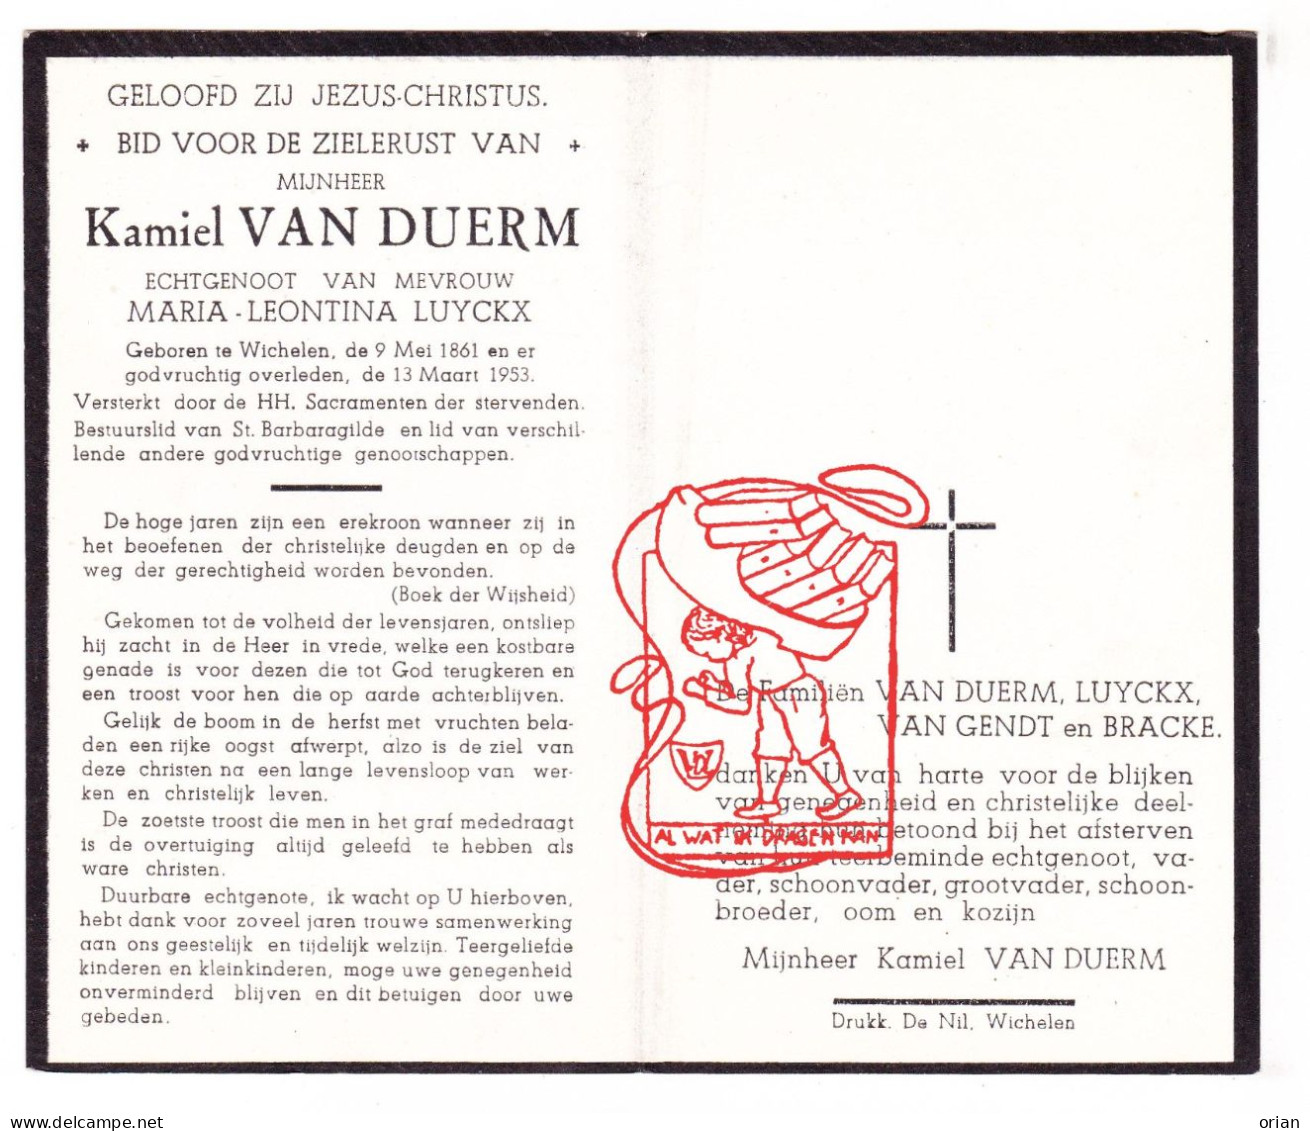 DP Kamiel Van Duerm ° Wichelen 1861 † 1953 X Maria Leontina Luyckx // Van Gendt Bracke - Santini